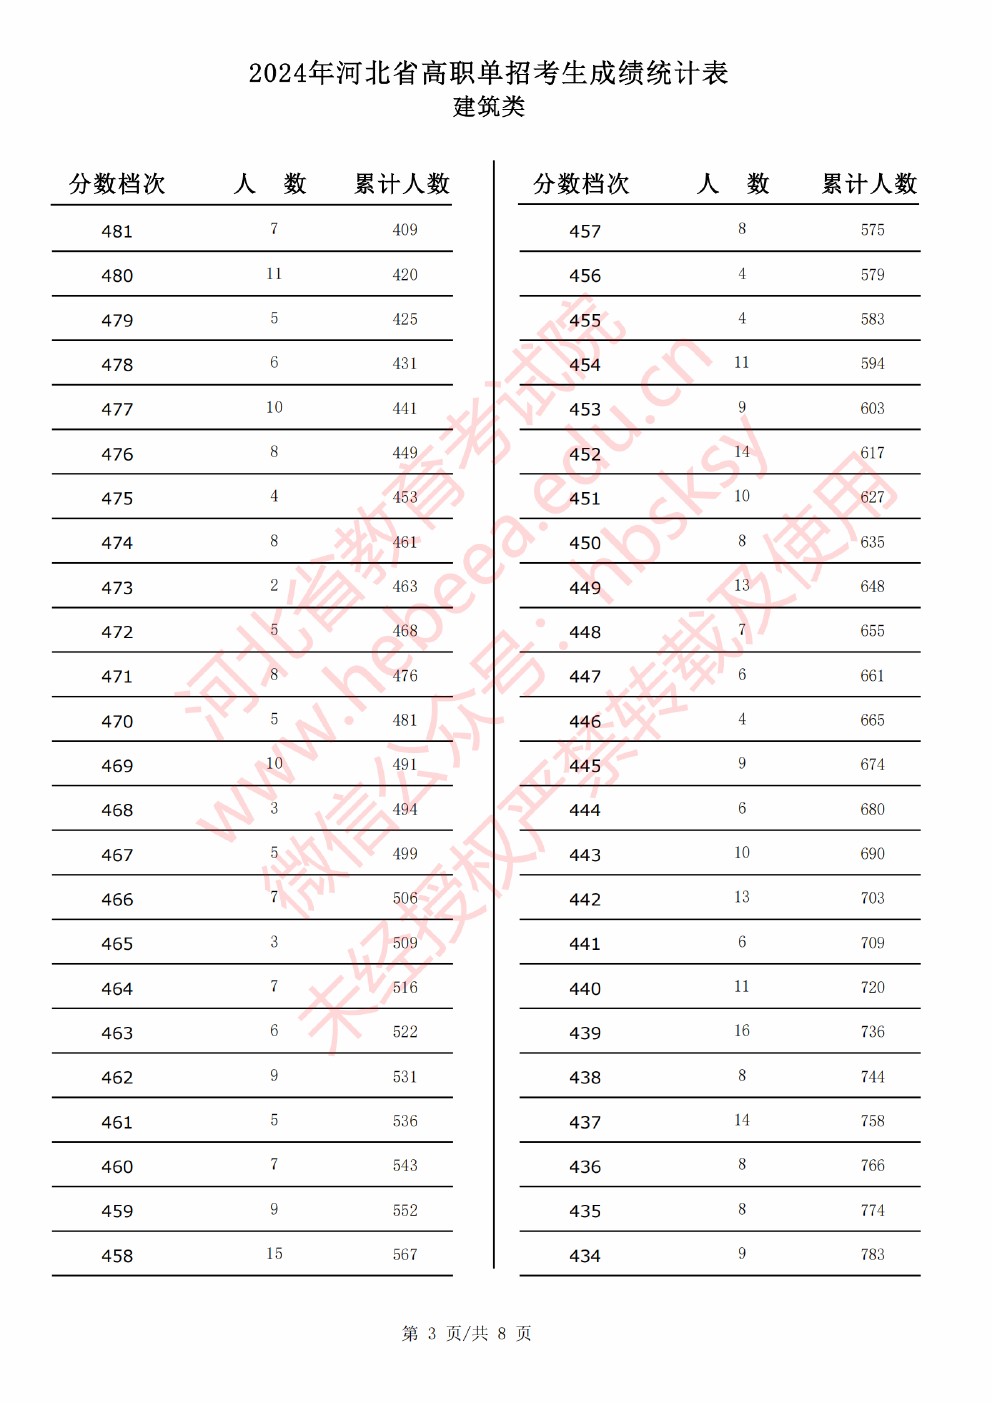 2024年河北省高职单招考试建筑类成绩统计表 